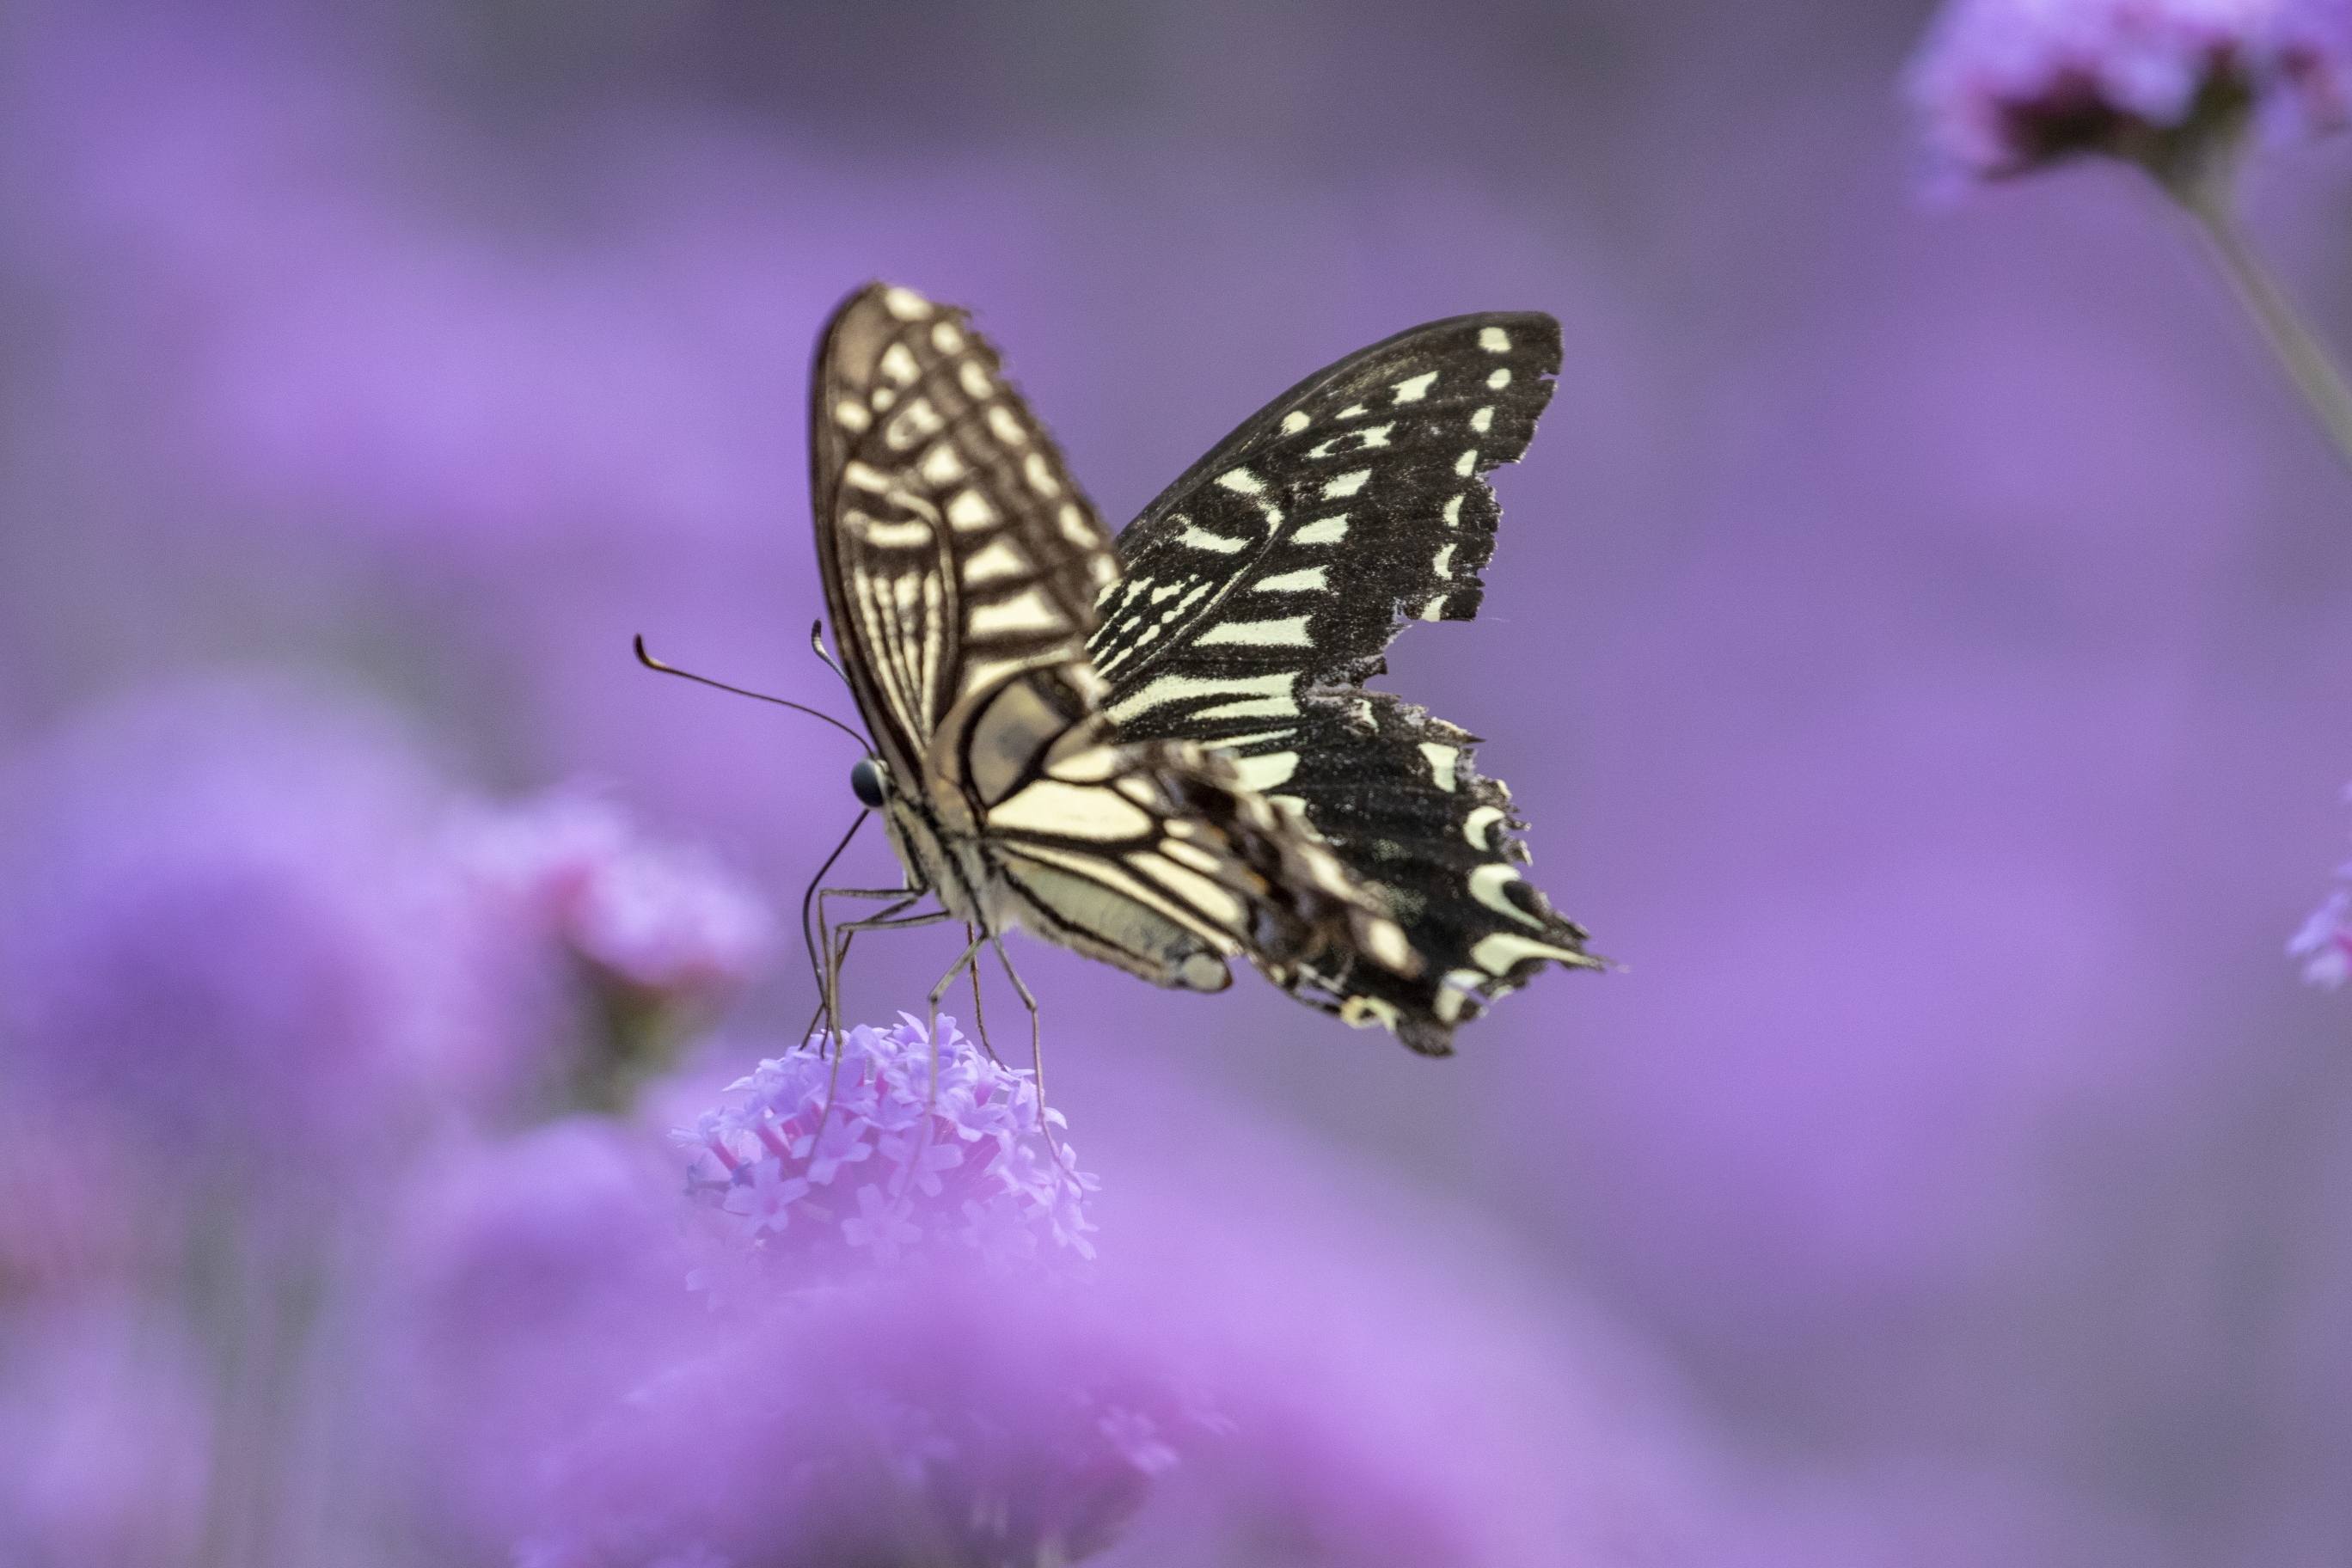 凤蝶,是凤蝶科成员最美丽的昆虫别称:燕尾蝶,凤子蝶等